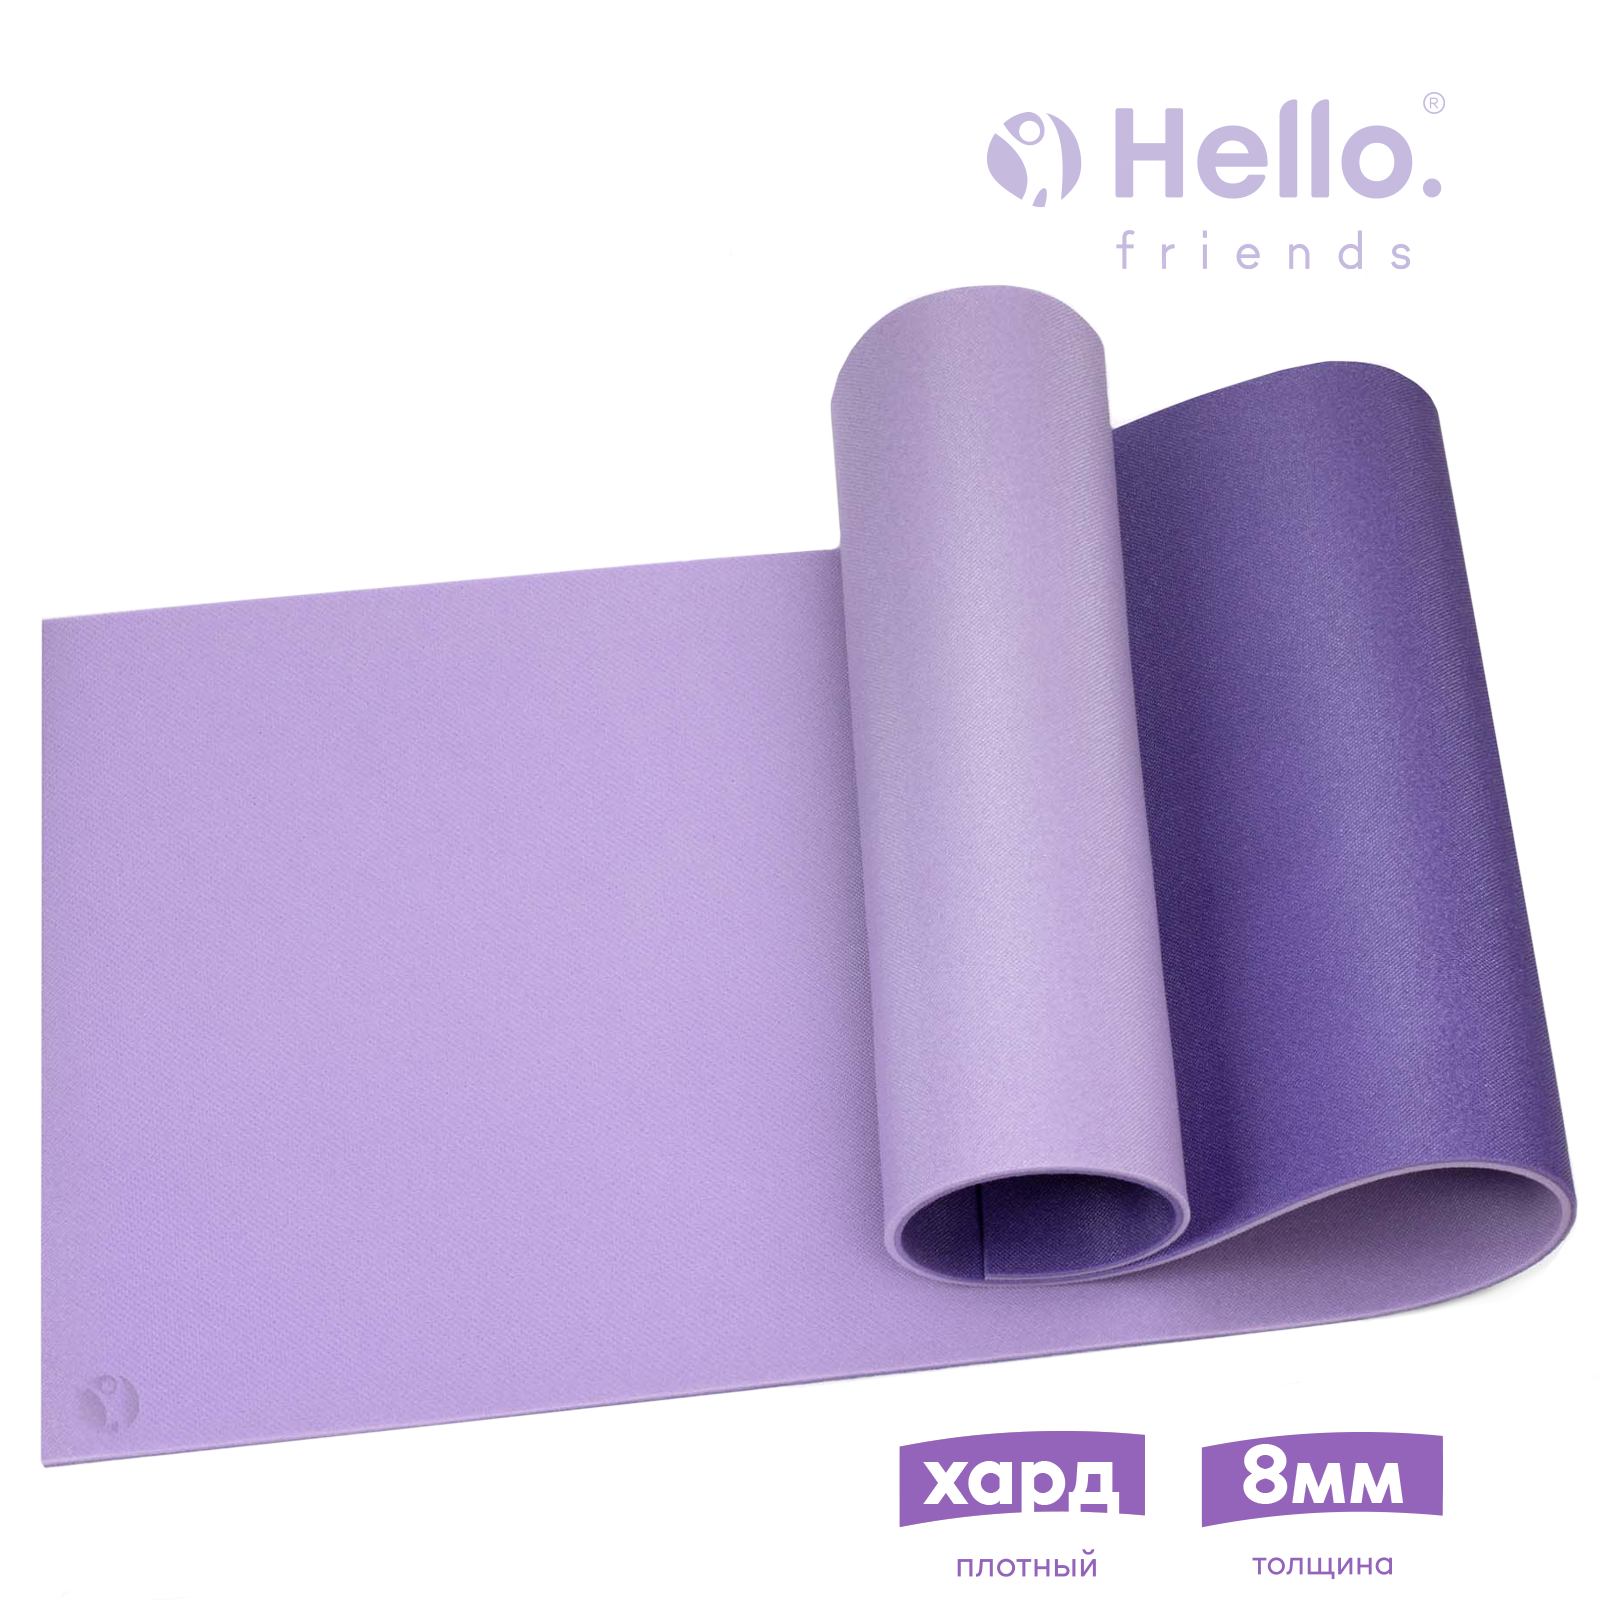 Коврик для фитнеса и йоги HelloFriends Hard 8мм 80x60 см, фиолетовый, нескользящий